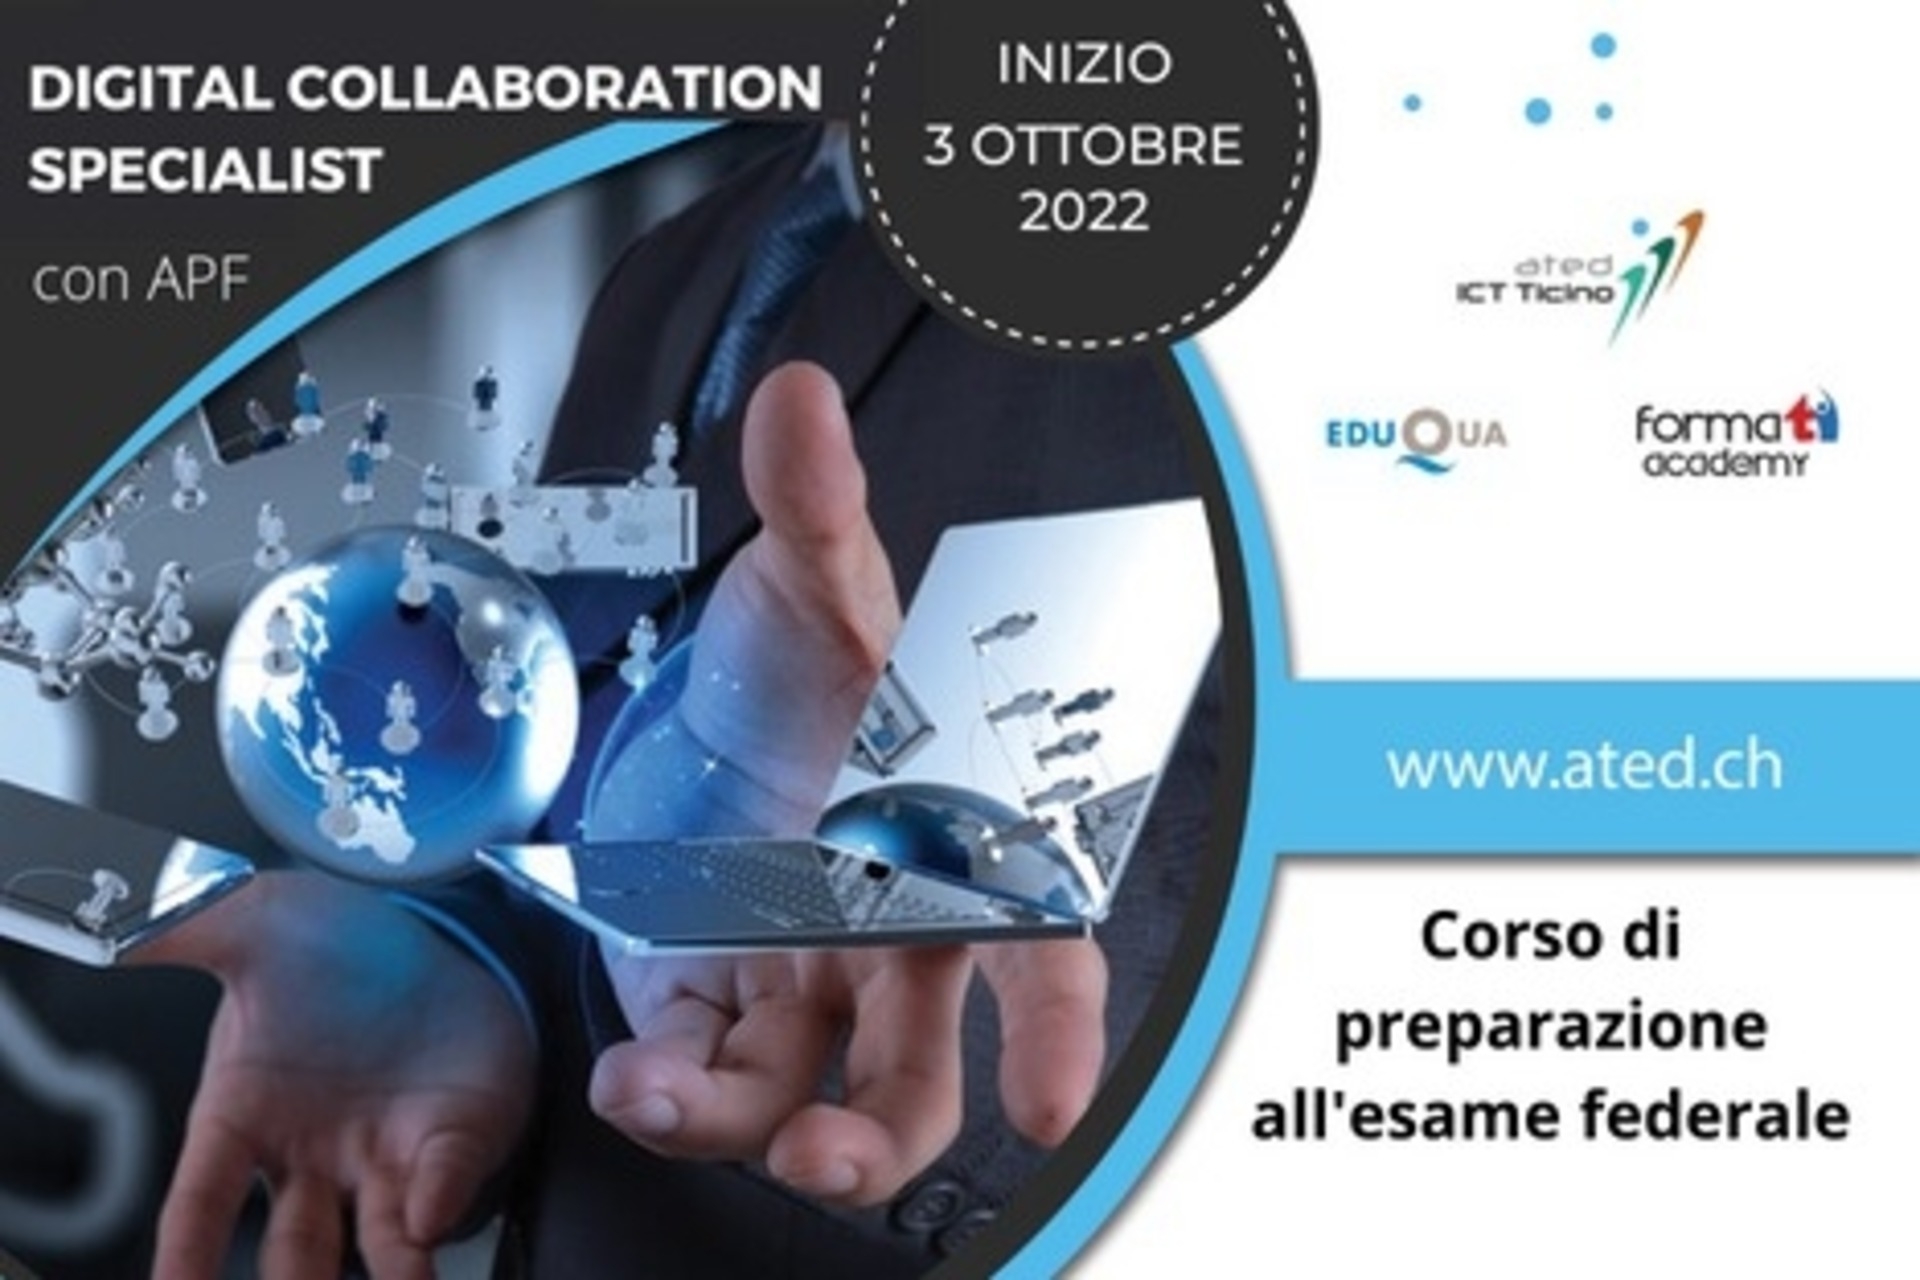 تصویری کلیدی بروشور دوره "متخصص همکاری دیجیتال با گواهینامه حرفه ای فدرال" توسط ated-ICT Ticino